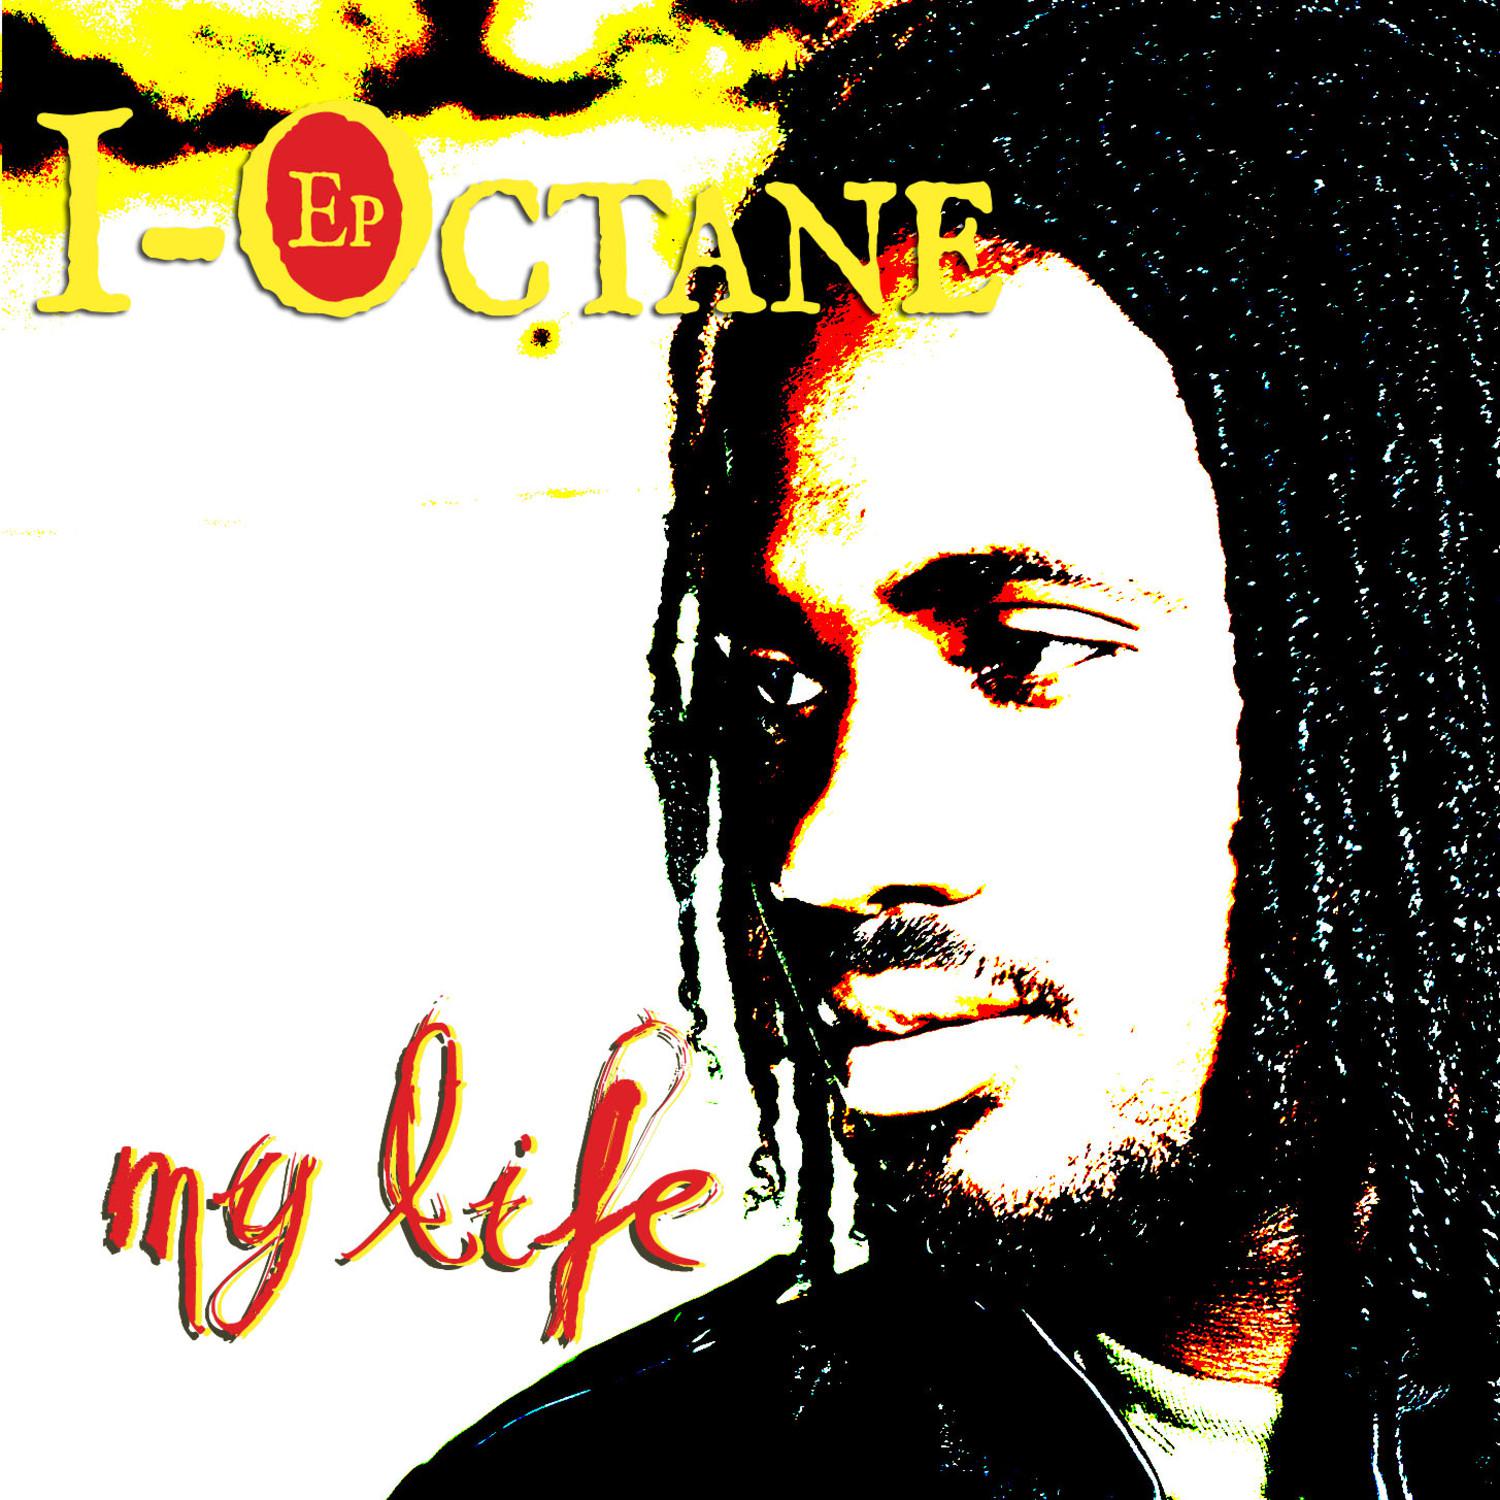 I-Octane EP - My Life